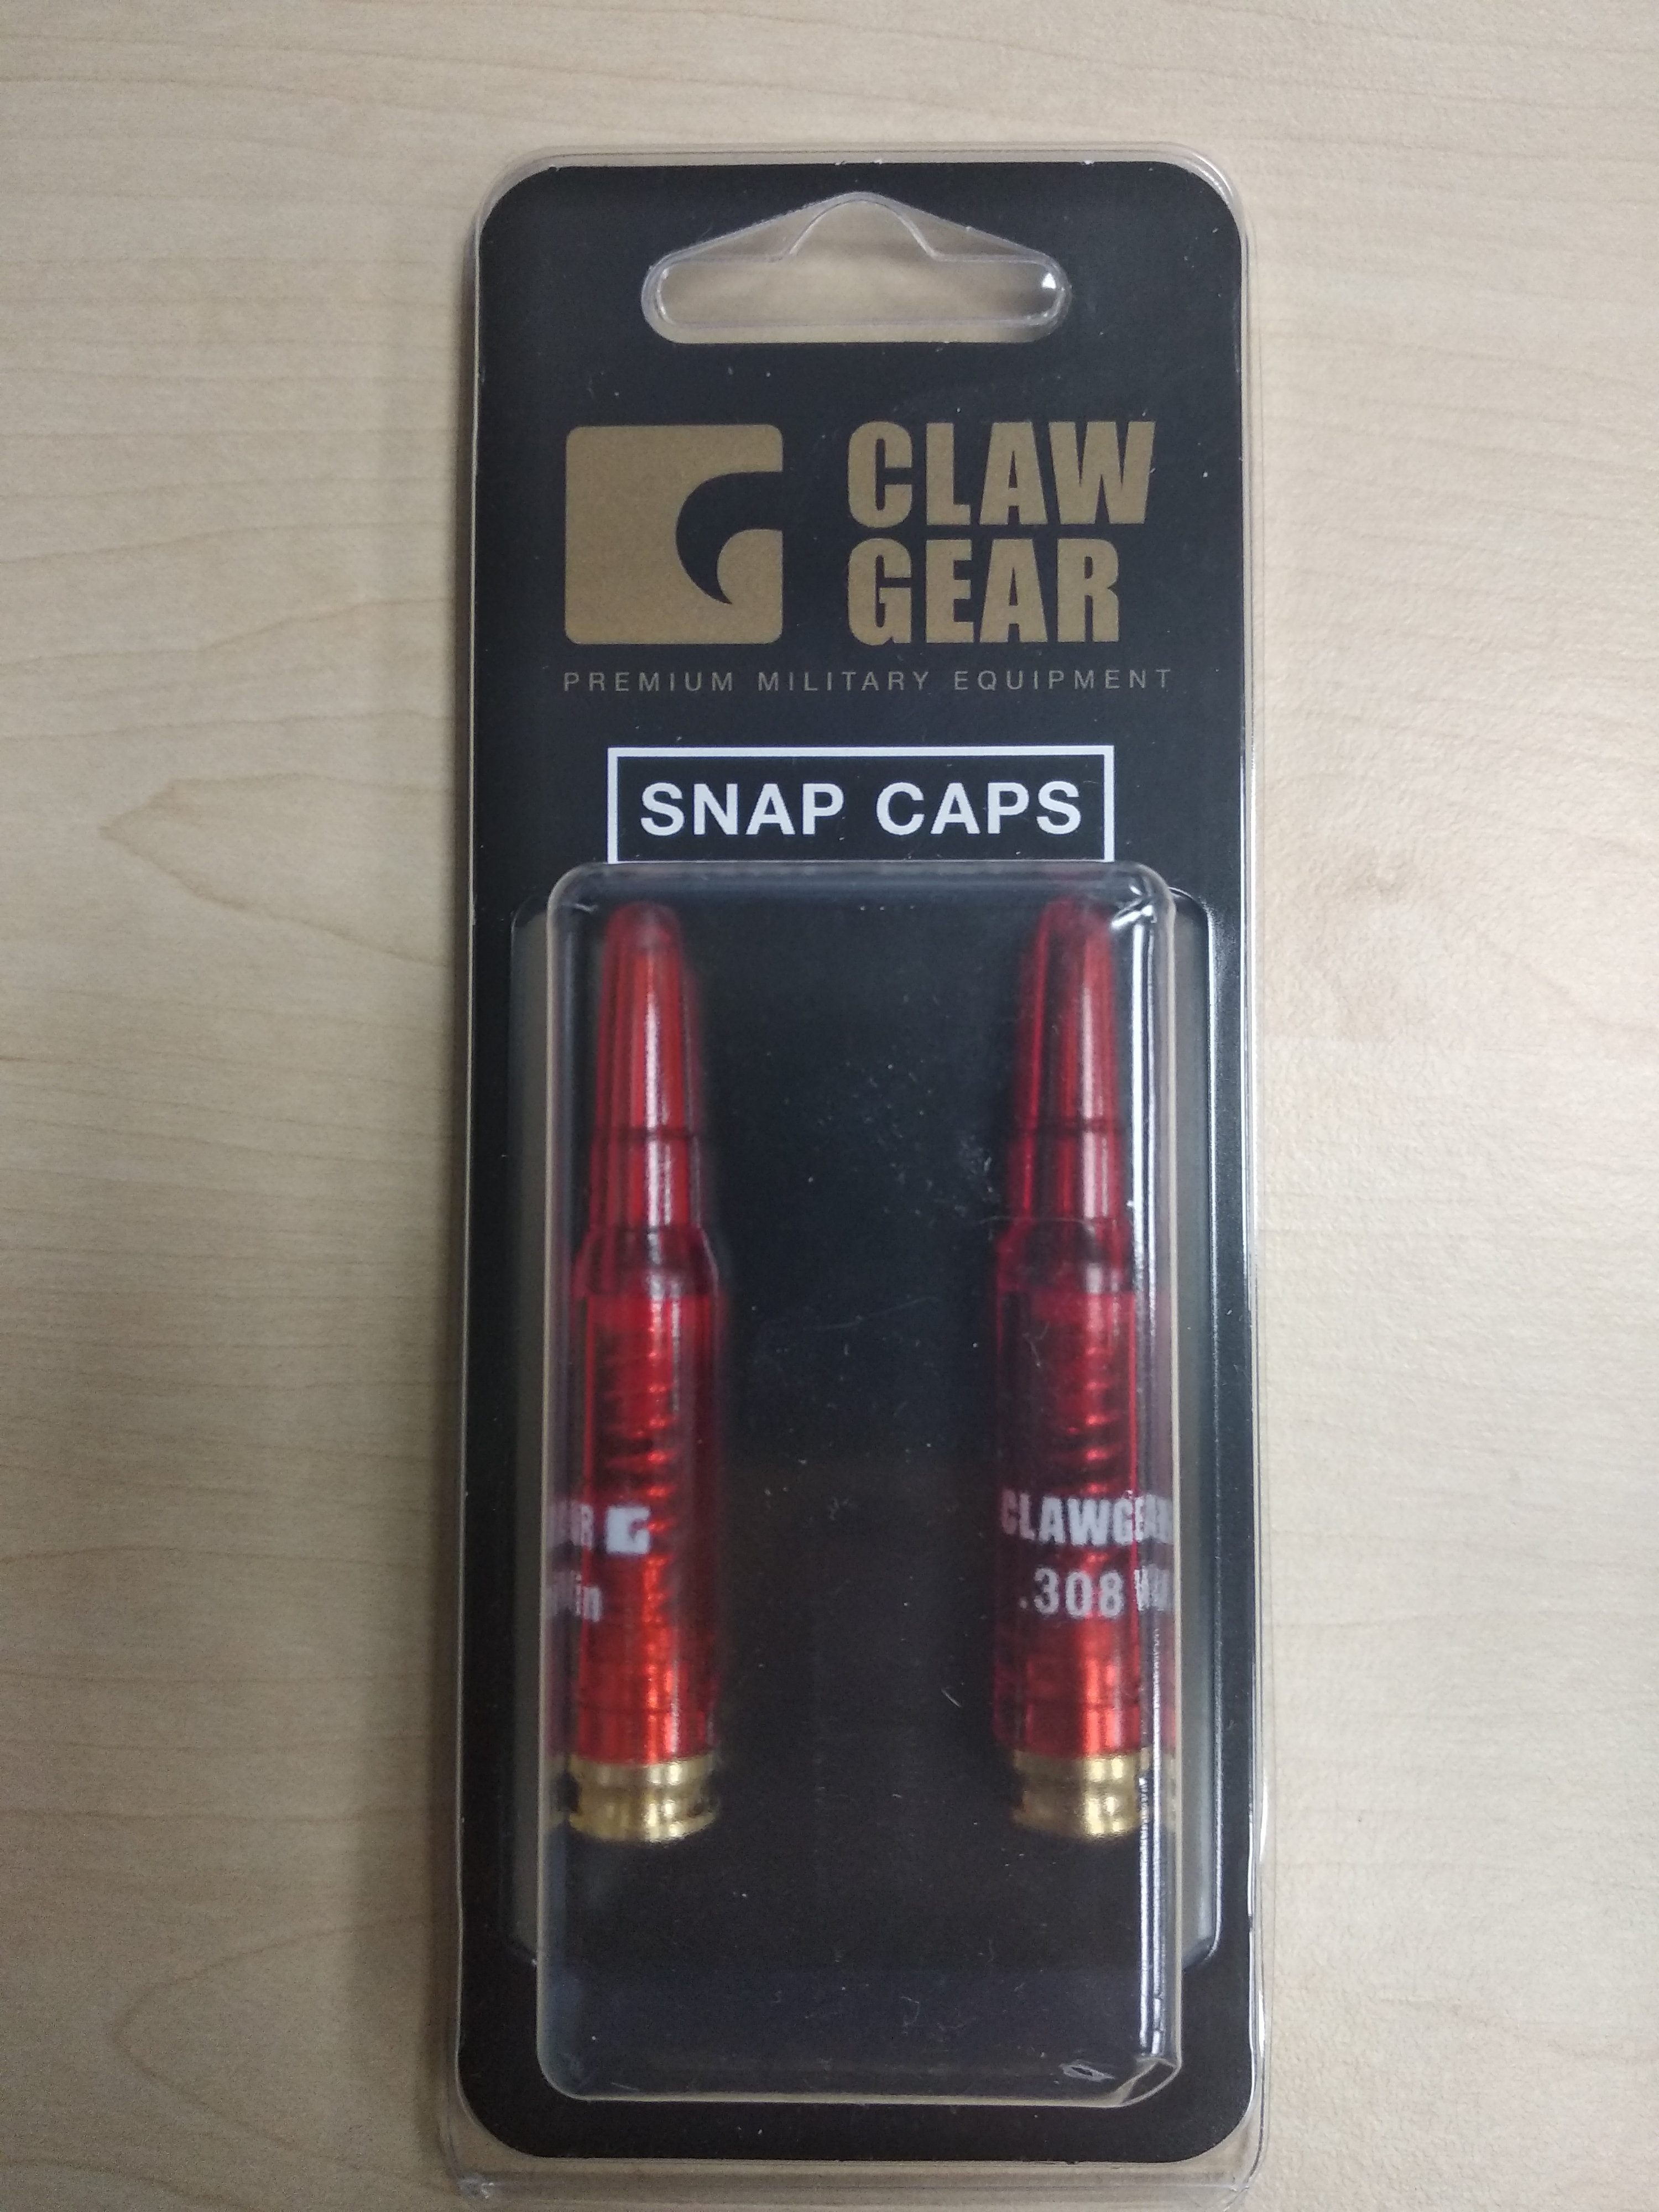 Clawgear Cvičné náboje SNAP CAPS .308 Win, blistr 2 ks